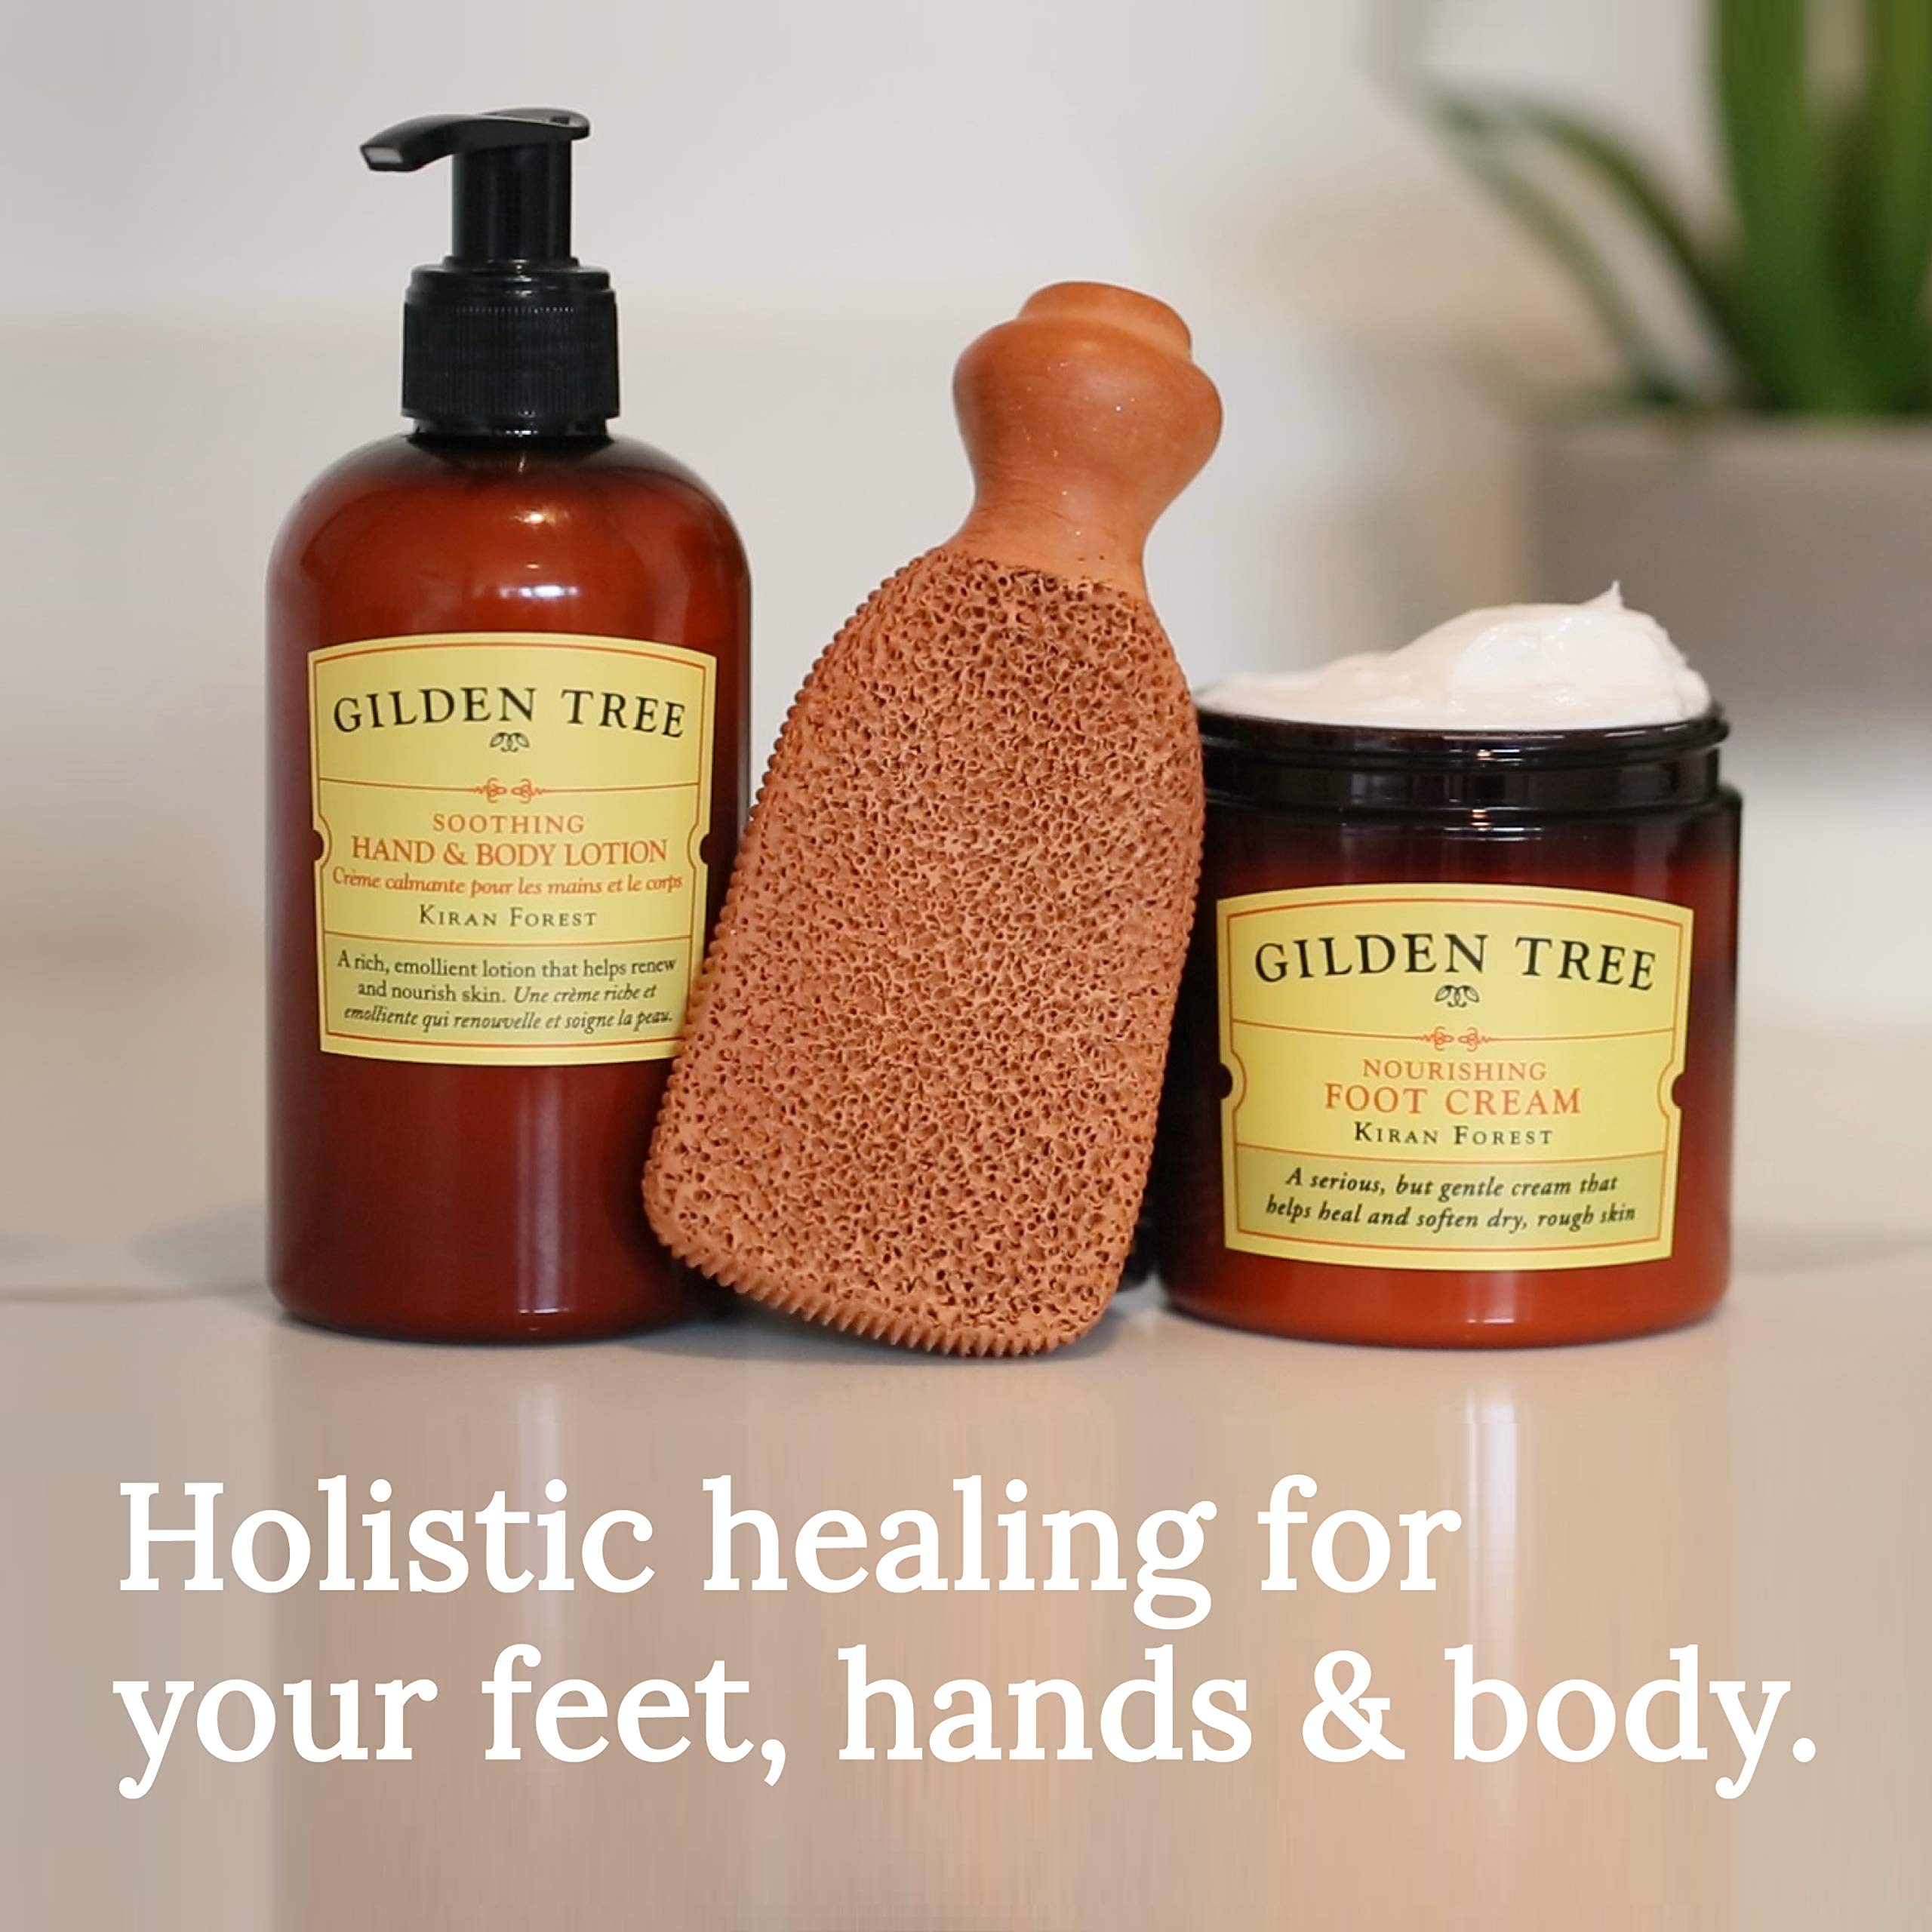 GILDEN TREE Nourishing Foot Cream + Foot Scrubber + Foot Soak Bundle